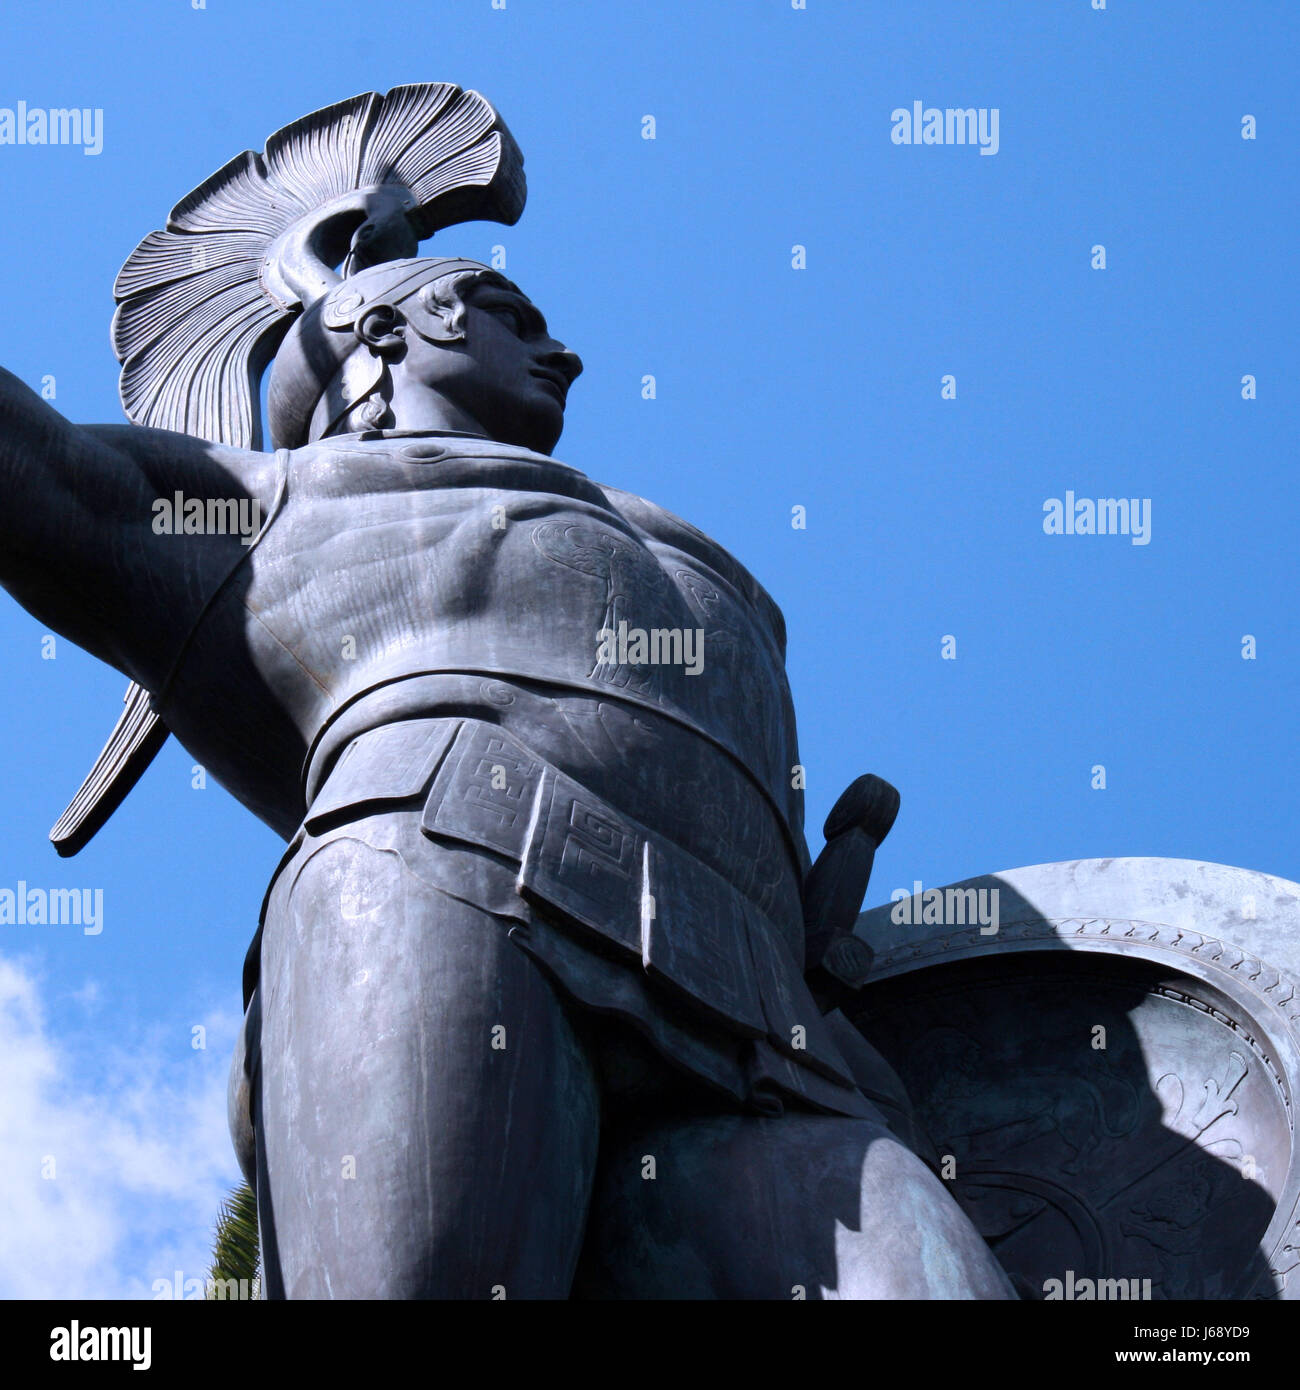 Estatua del brazo armamento guerrero arma lanza el escudo de armas de Aquiles fortaleza de piedra Foto de stock